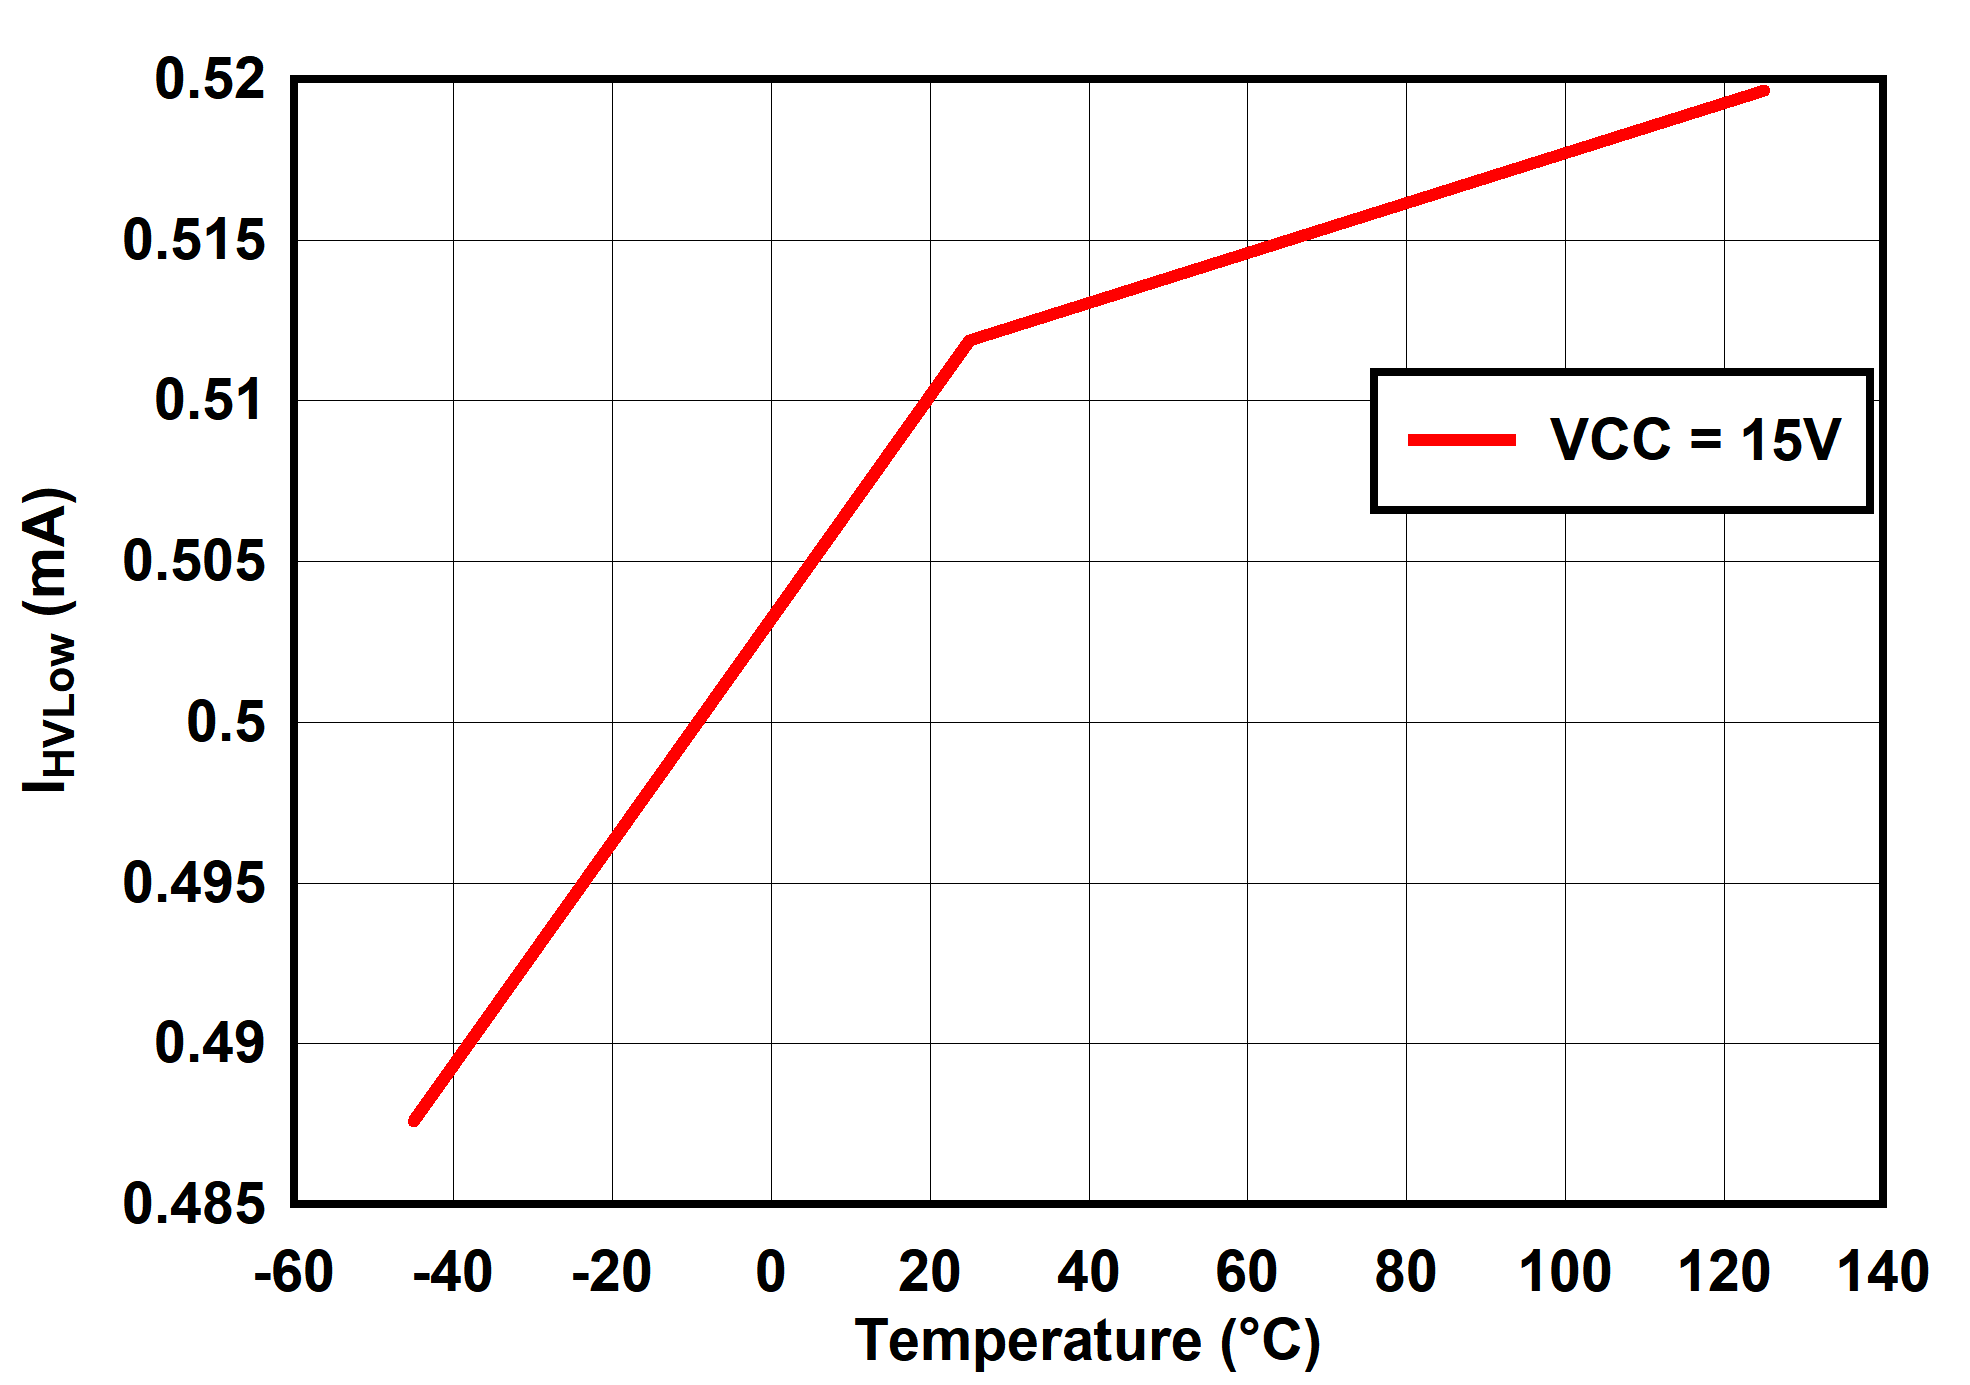 UCC25660 IHVLow vs Temperature